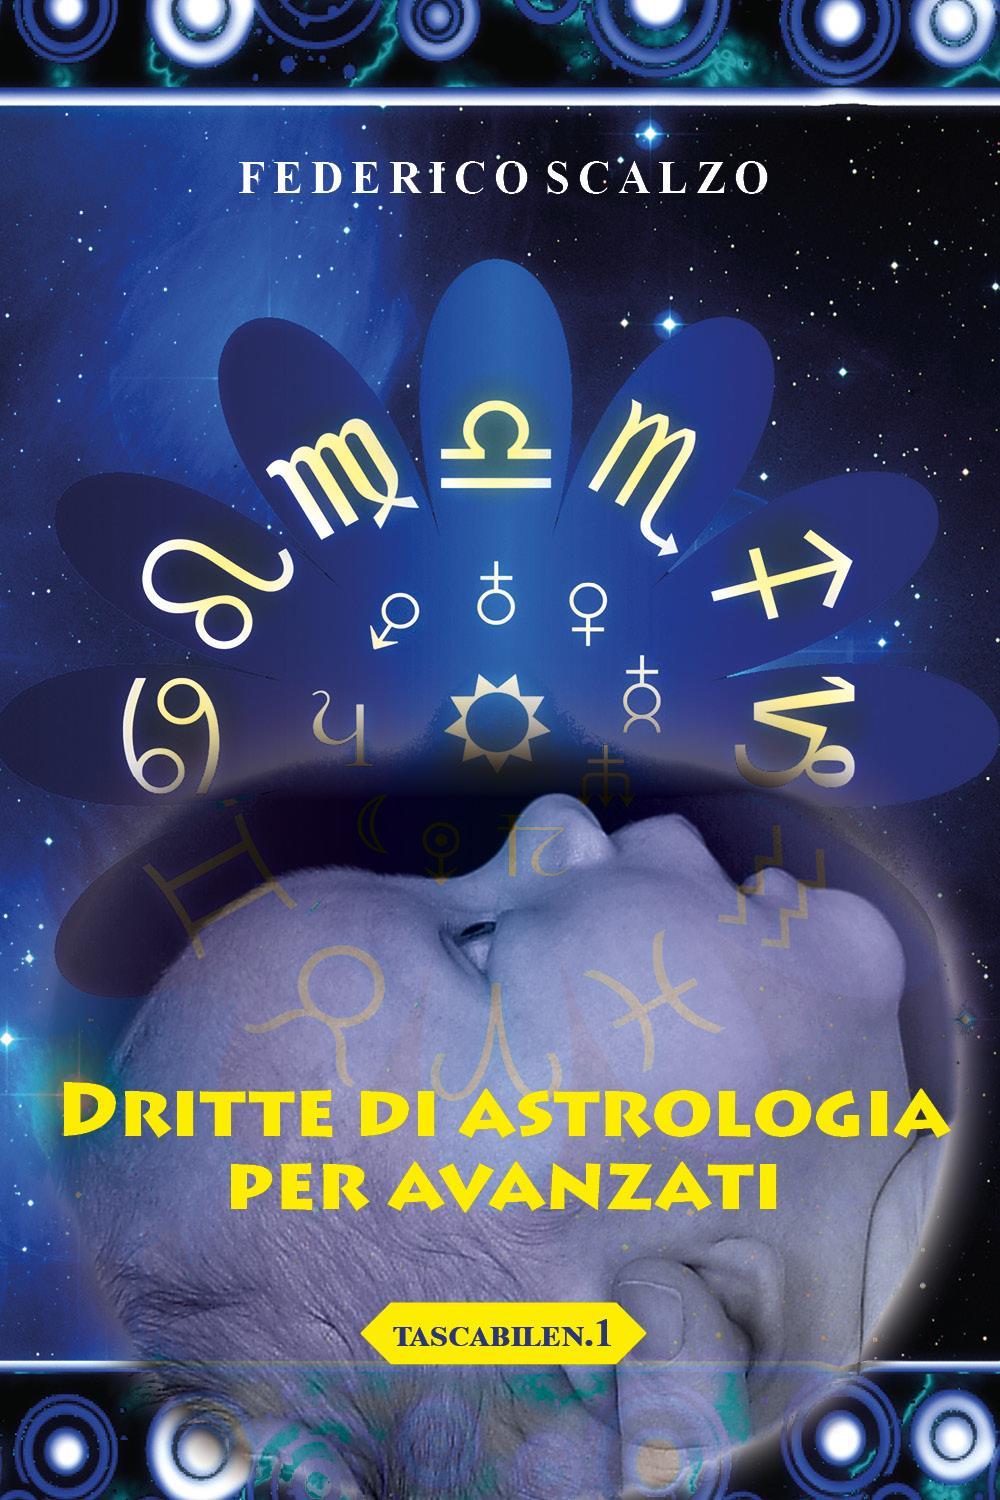 Dritte di astrologia per avanzati (tascabile n.1)